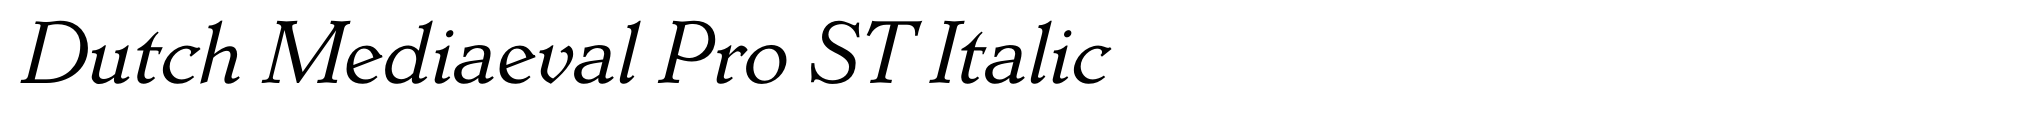 Dutch Mediaeval Pro ST Italic image